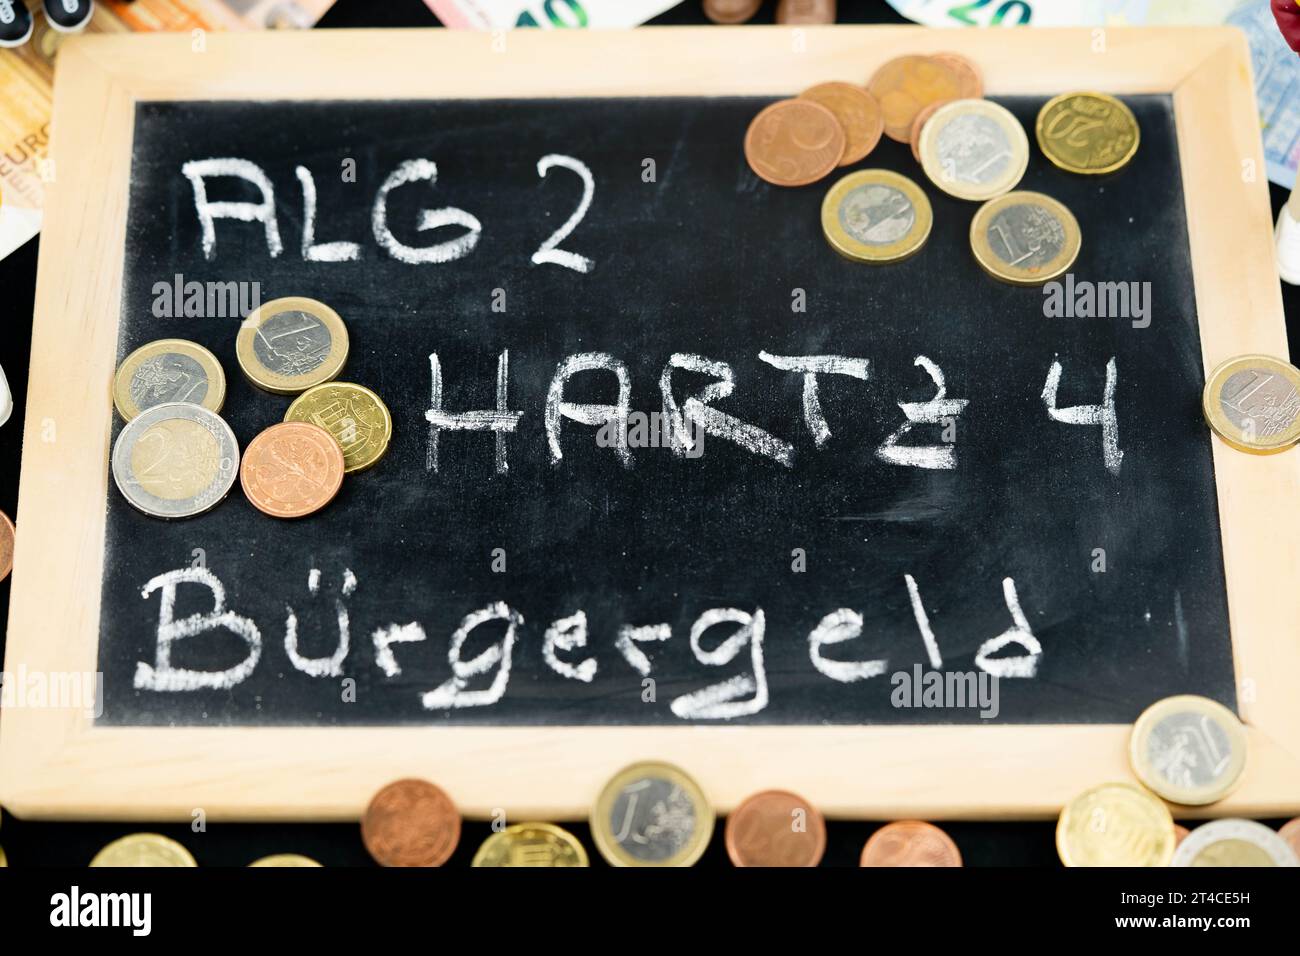 Tafel mit Alg 2, Hartz 4, Buergergeld - Bürgerdividende Stockfoto